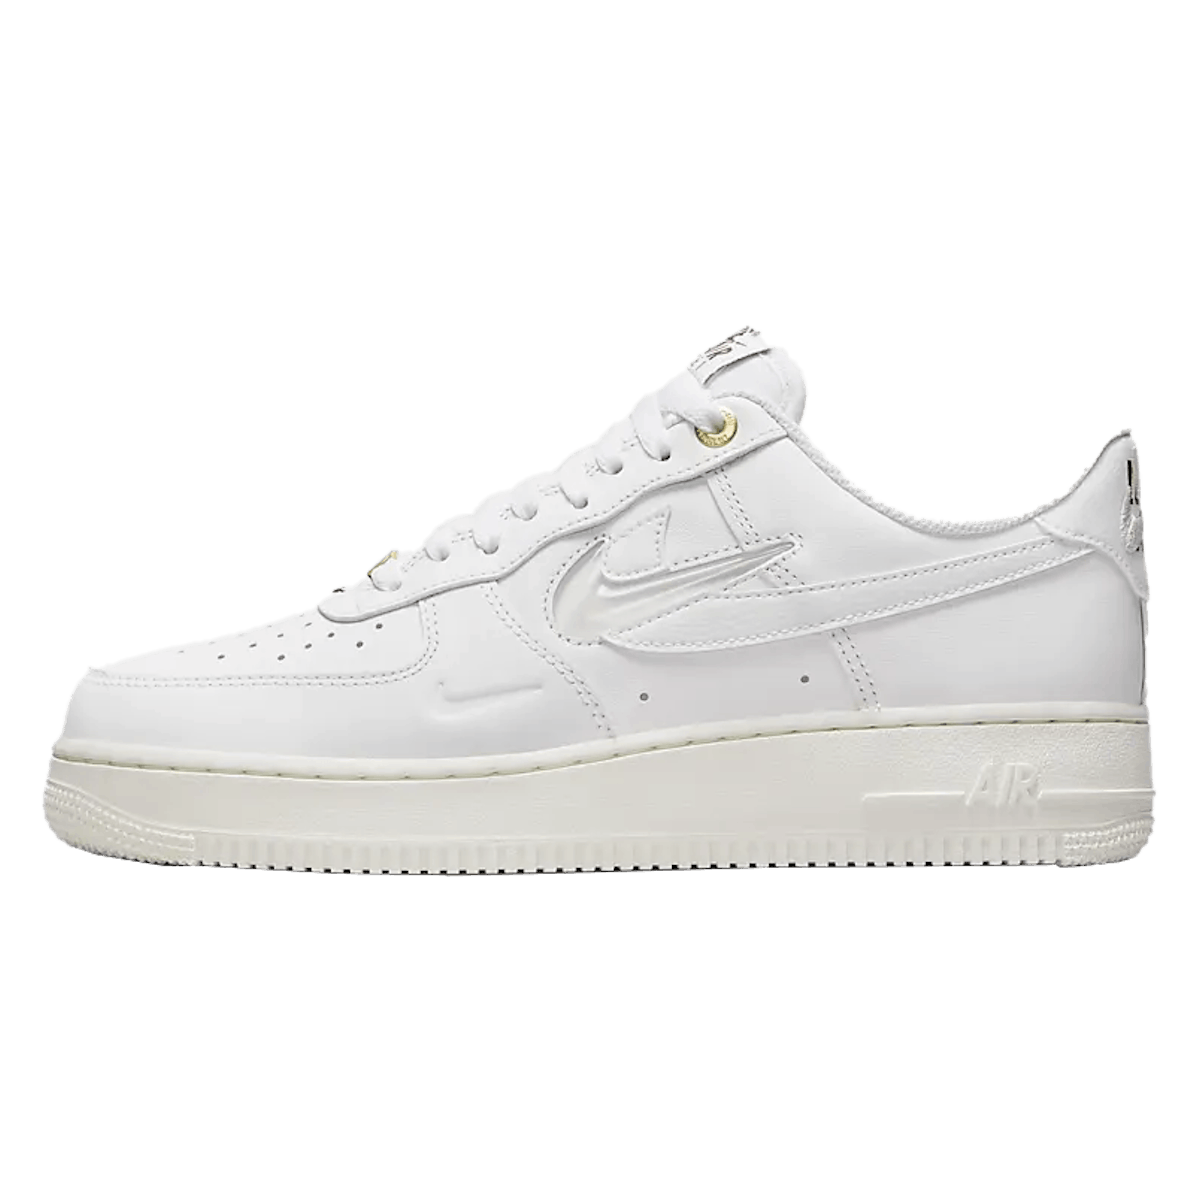 Nike Air Force 1 '07 Premium "White"